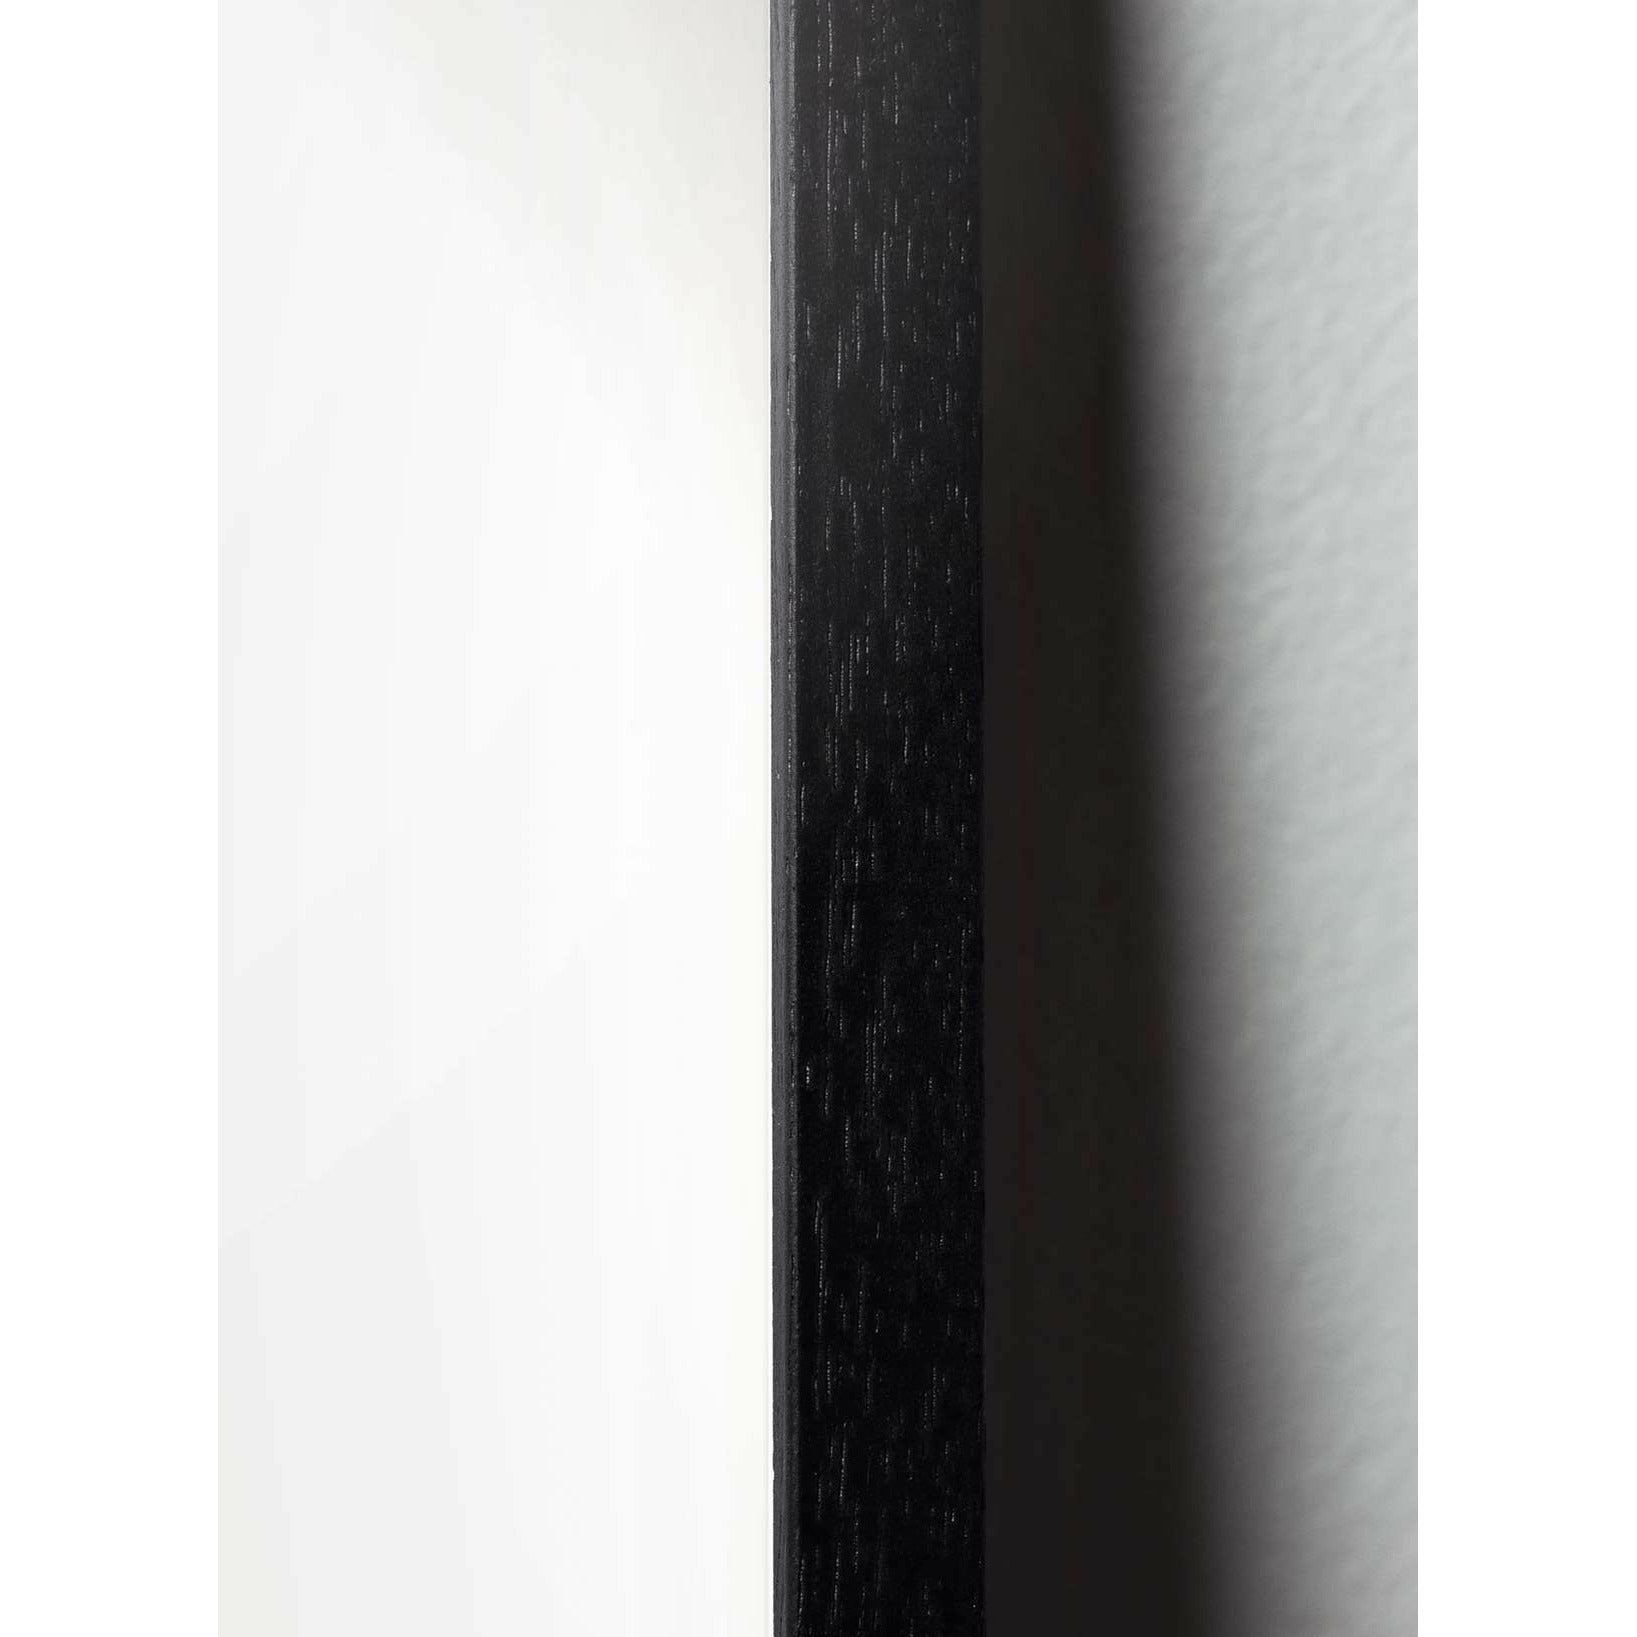 Poster di figure di uova di fruttatura, telaio in legno laccato nero 50x70 cm, marrone